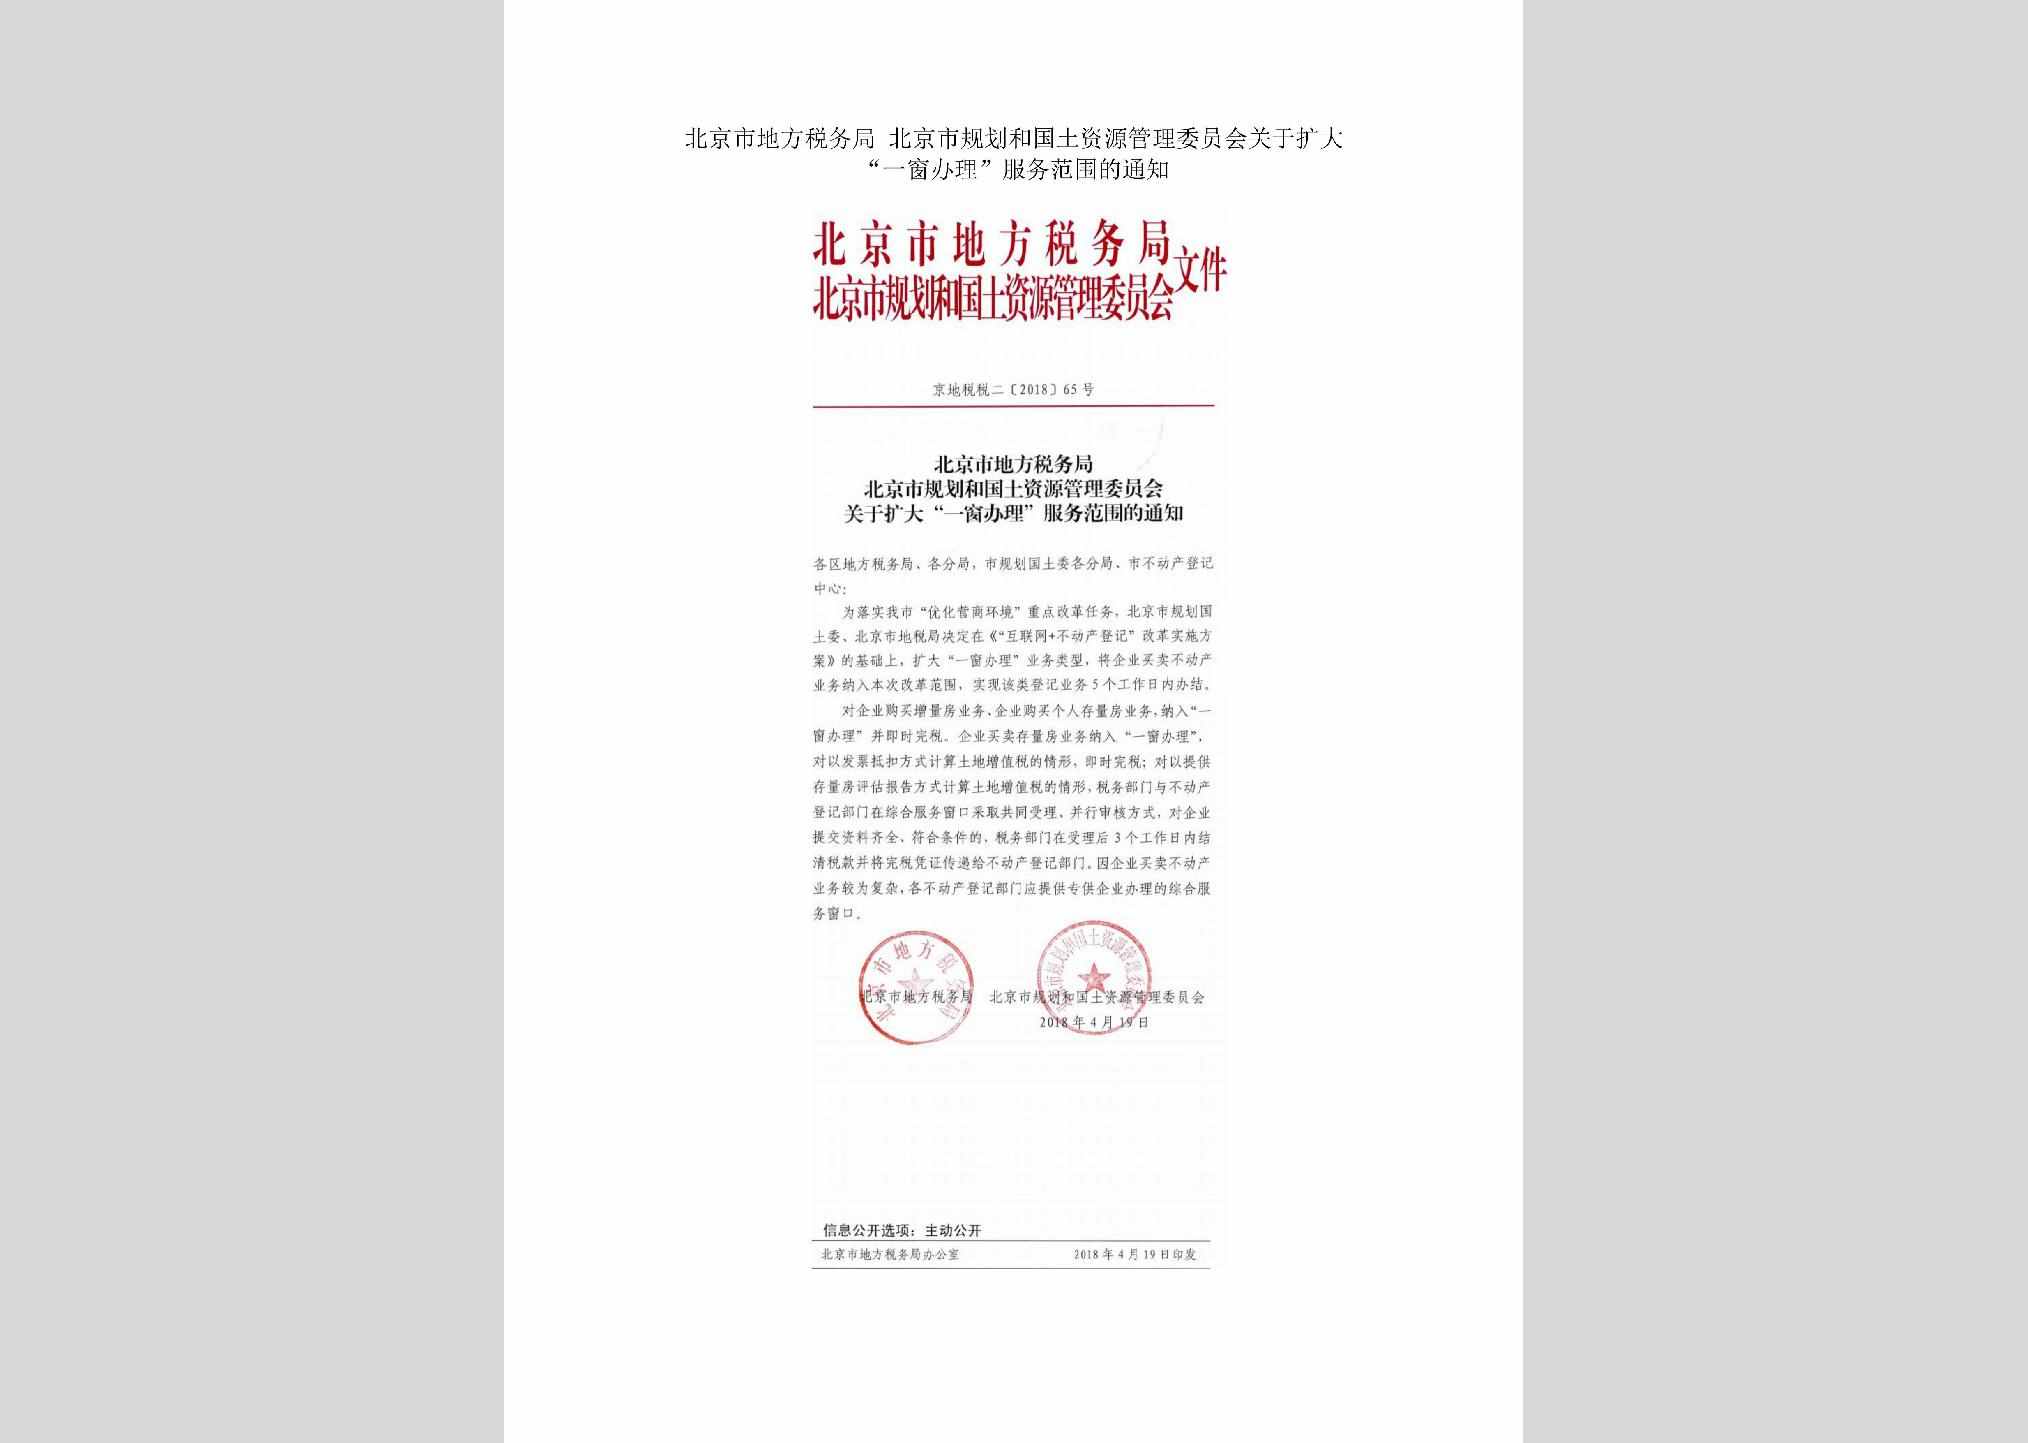 京地税税二[2018]65号：北京市地方税务局北京市规划和国土资源管理委员会关于扩大“一窗办理”服务范围的通知